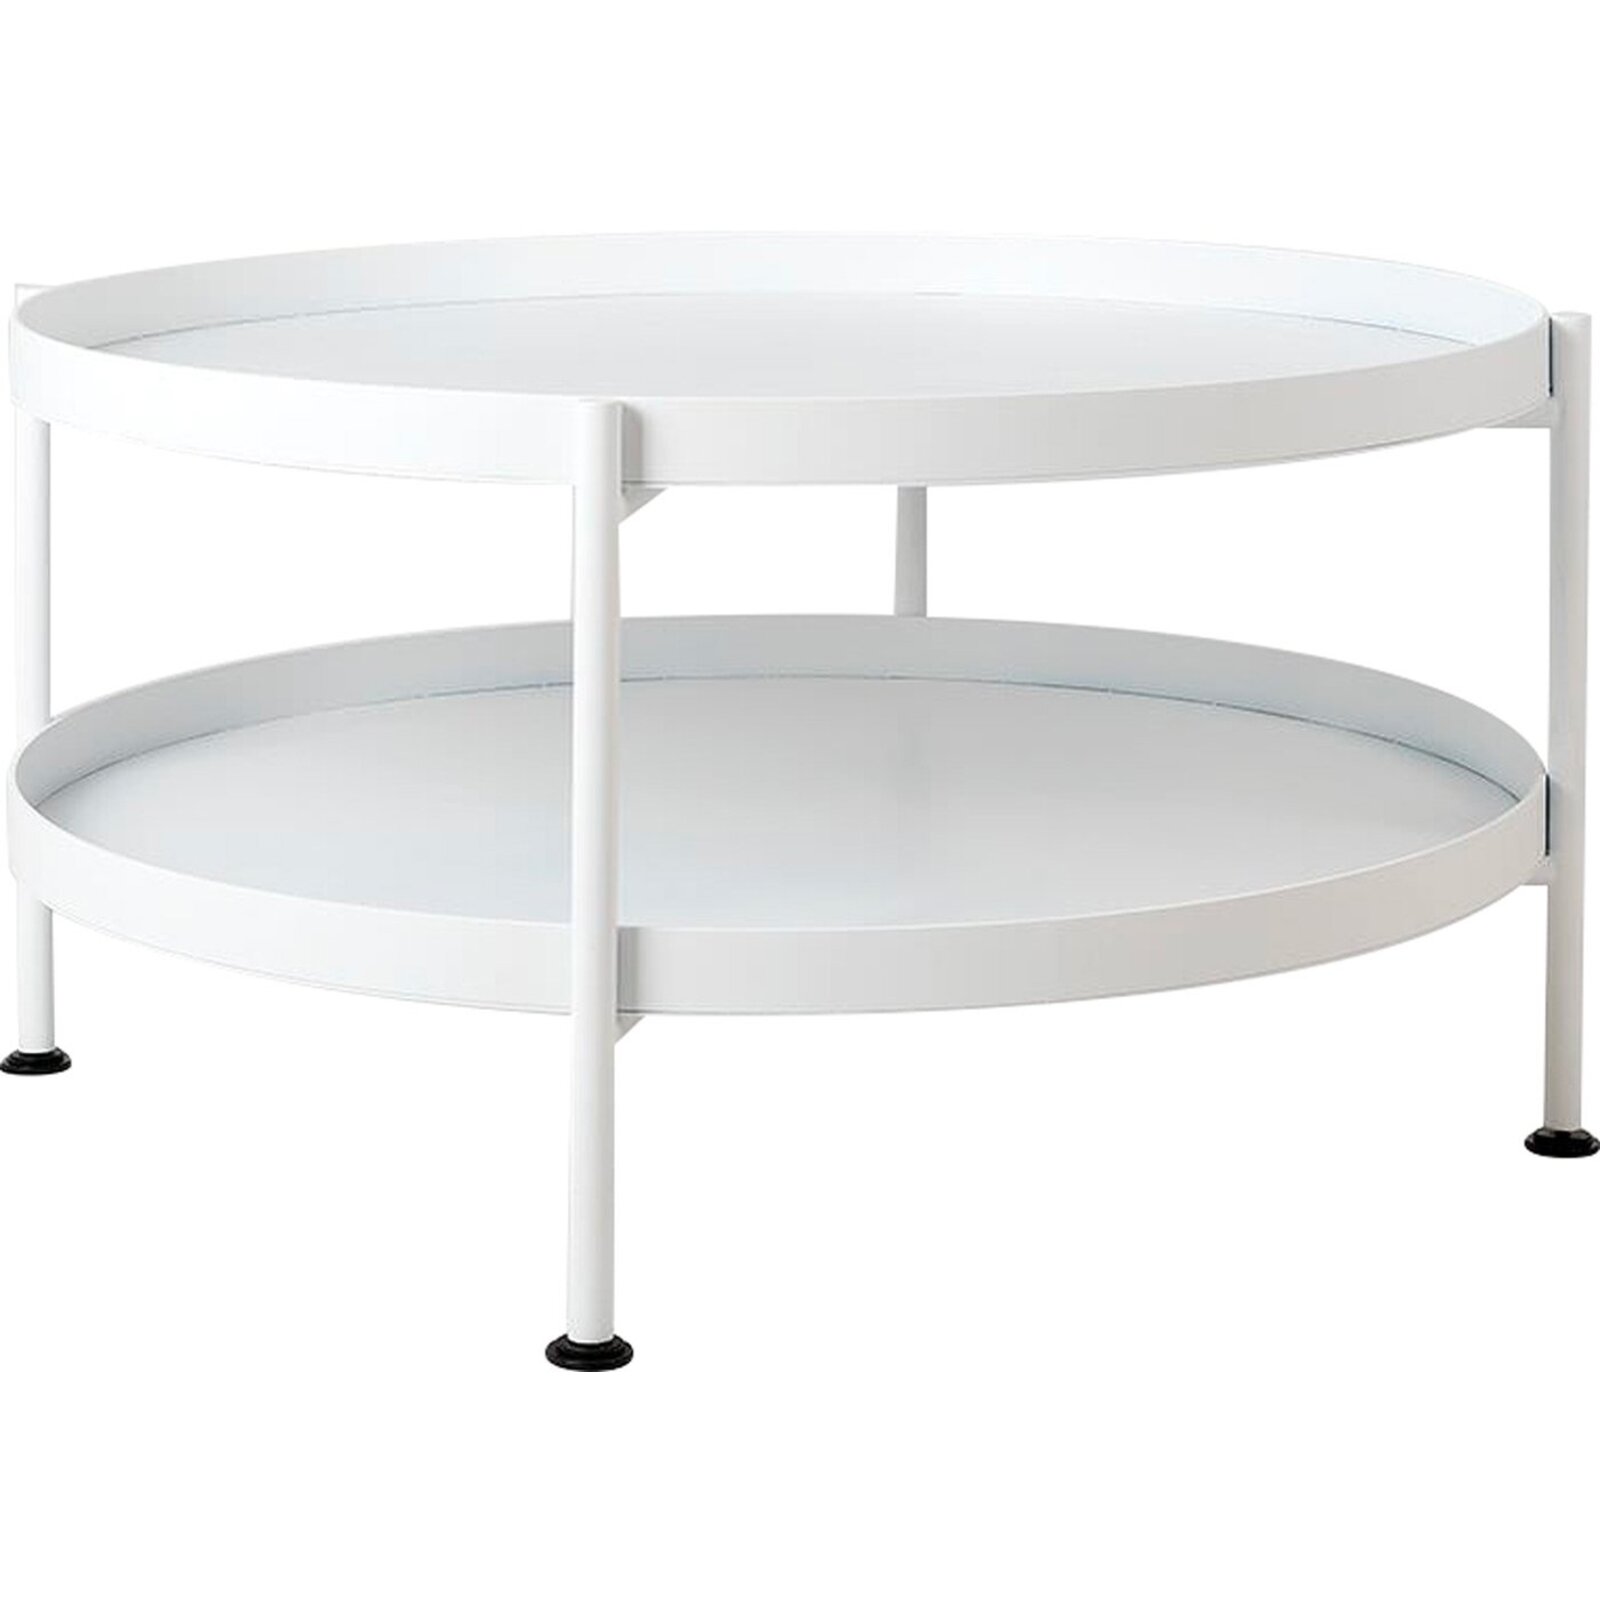 Table basse design en métal blanc d80cm